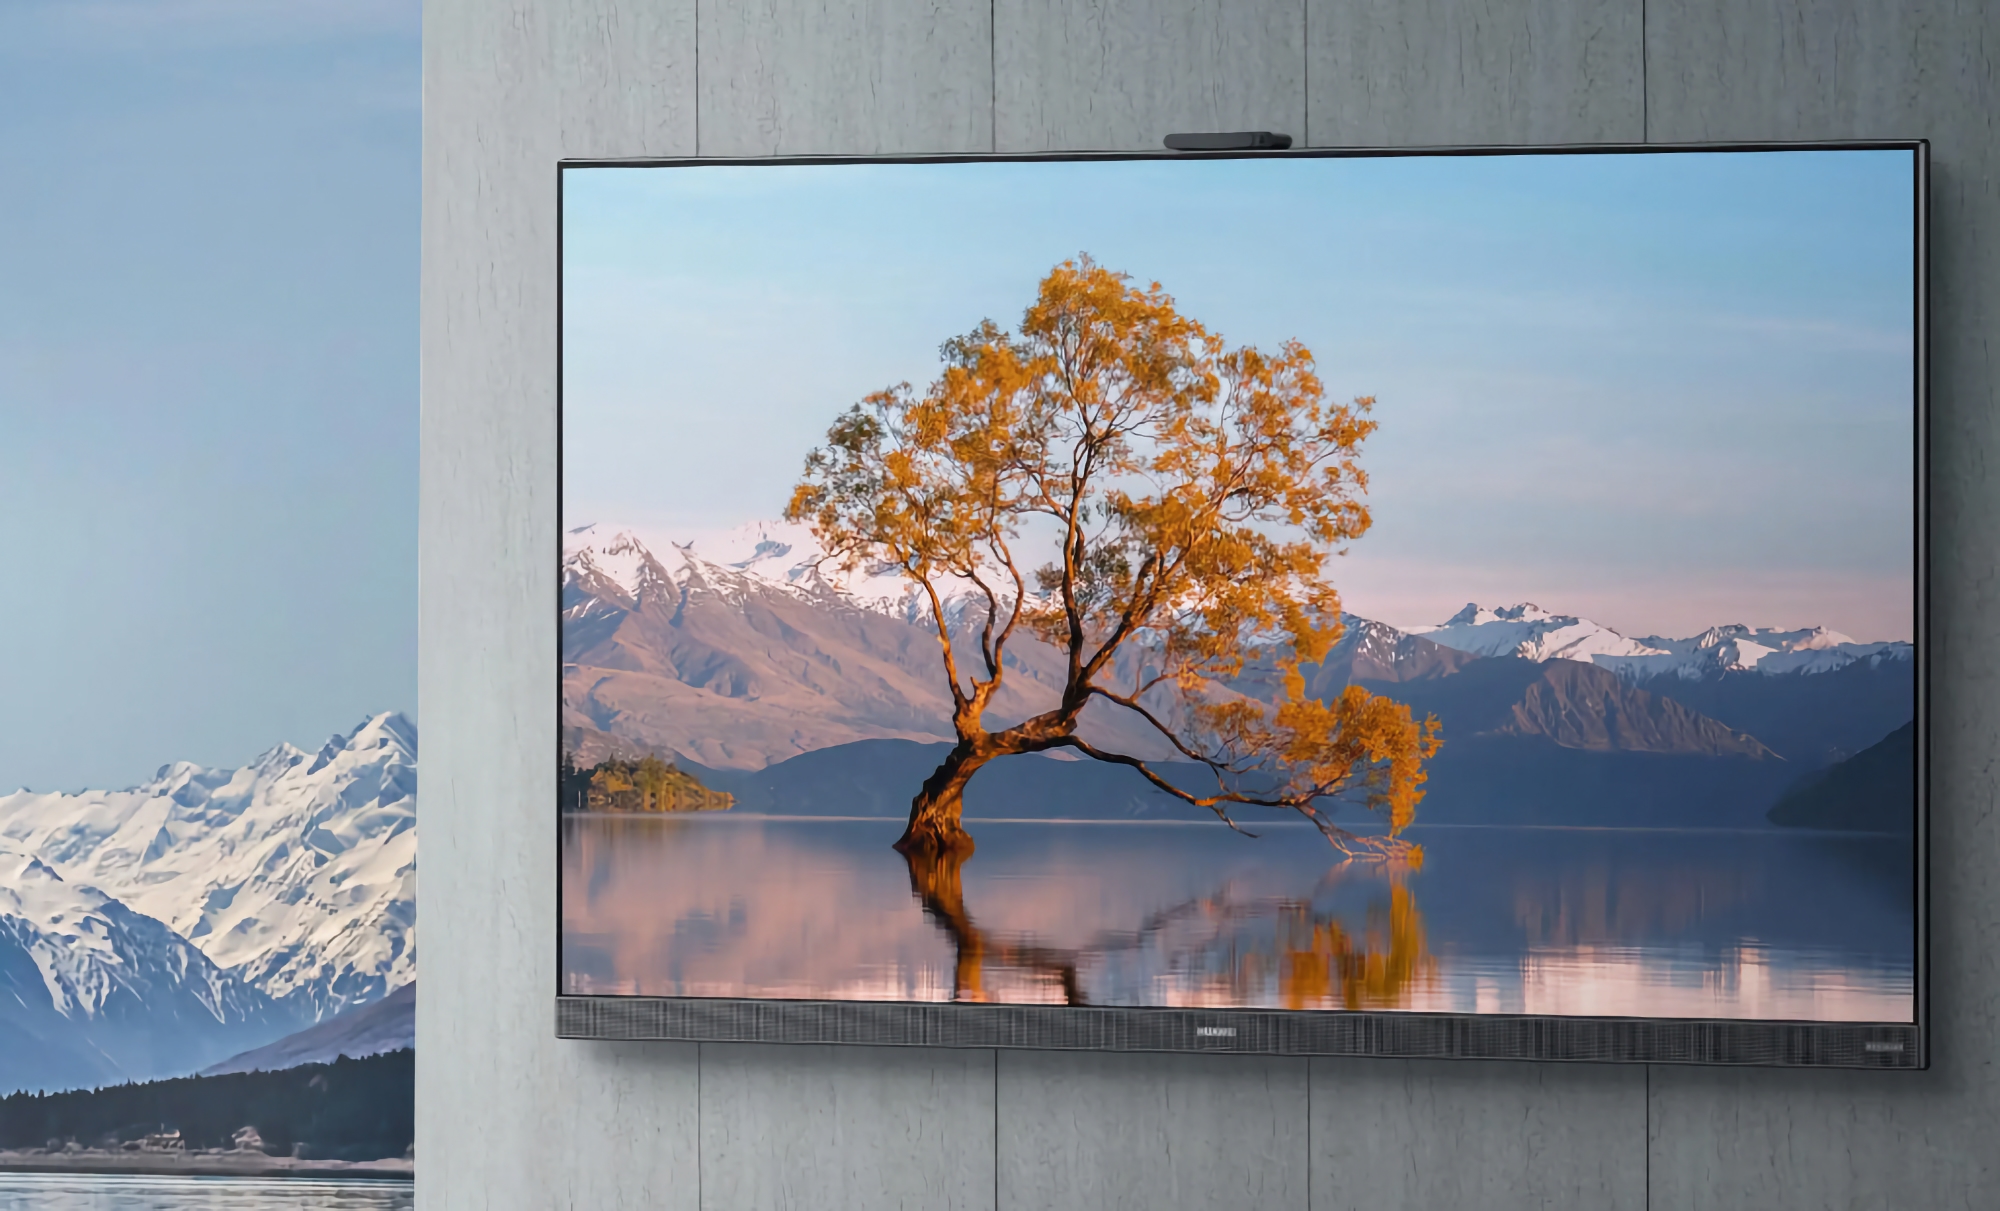 Huawei Smart Screen V TV 2022: una línea de televisores inteligentes con pantallas de hasta 75", soporte de 120 Hz, cámaras web integradas y HarmonyOS